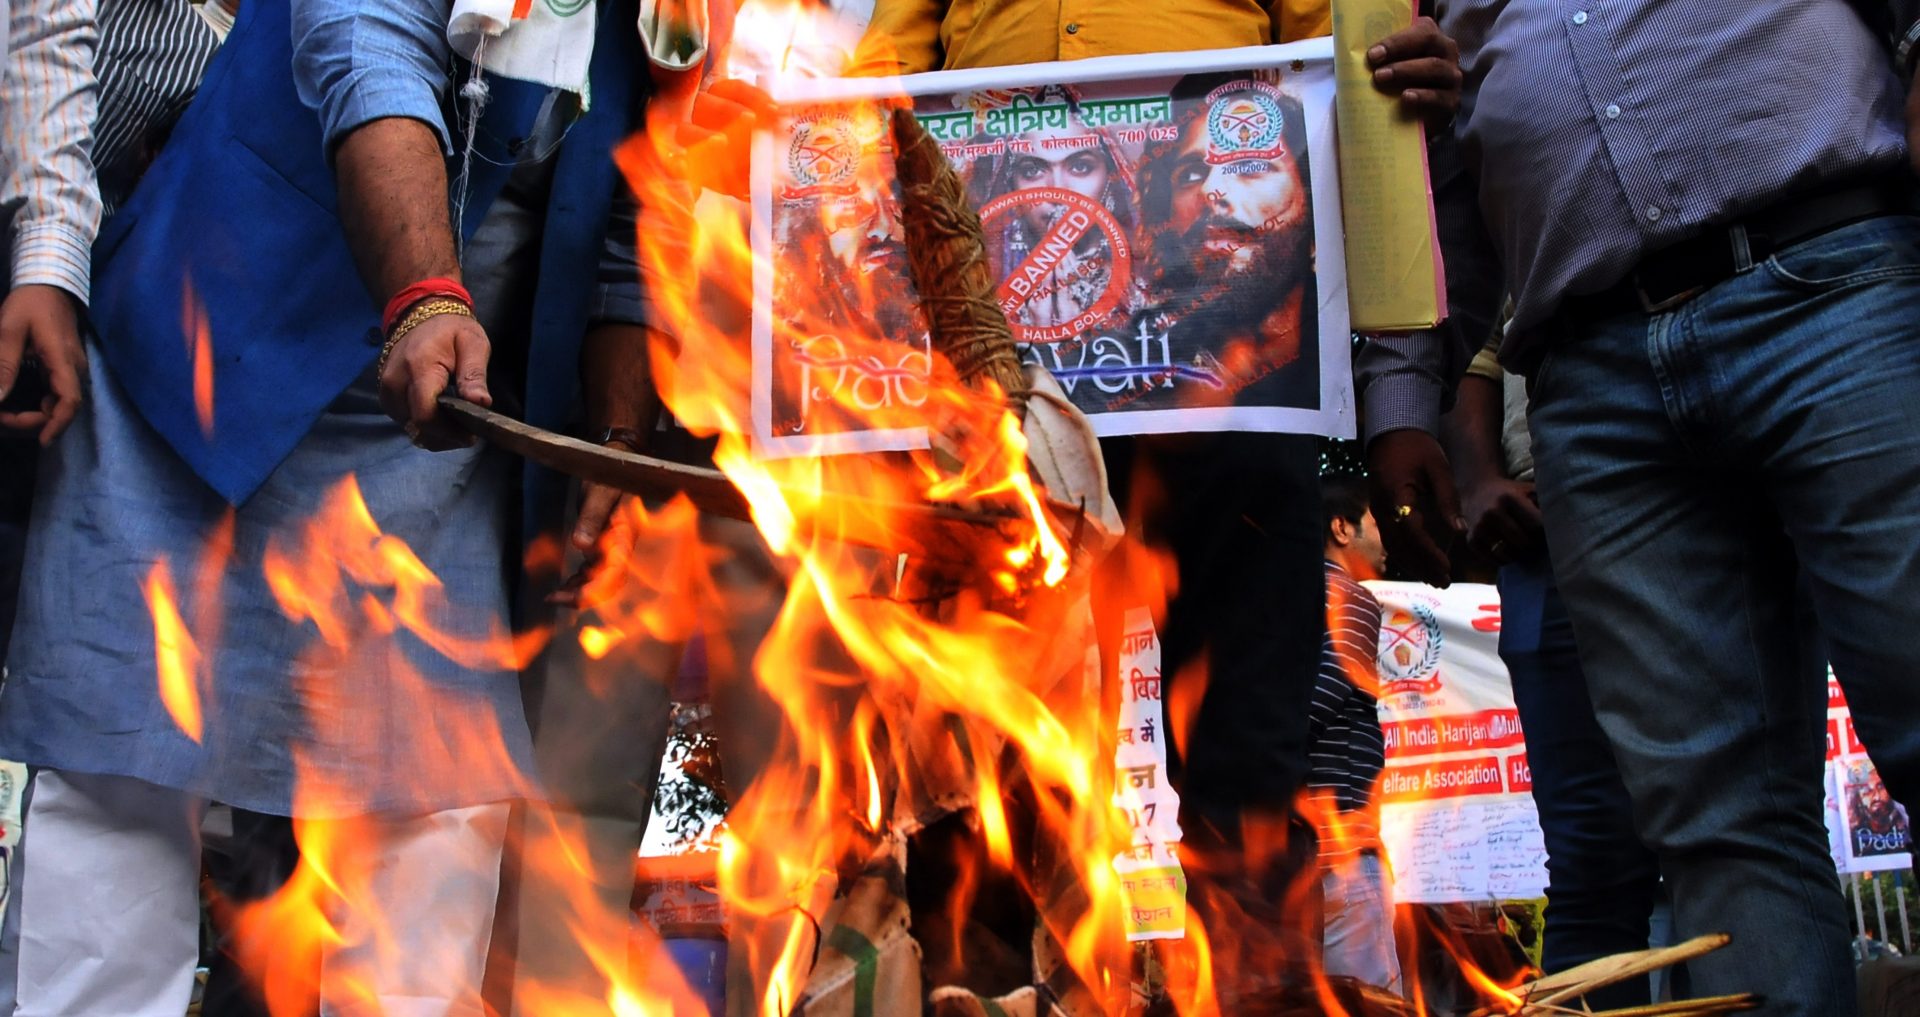 Manifestation de militants hindouistes contre le film "Padmavati" du réalisateur Sanjay Leela Bhansali, à Calcutta le 22 novembre 2017. (Crédits : Debajyoti Chakraborty/NurPhoto/via AFP)